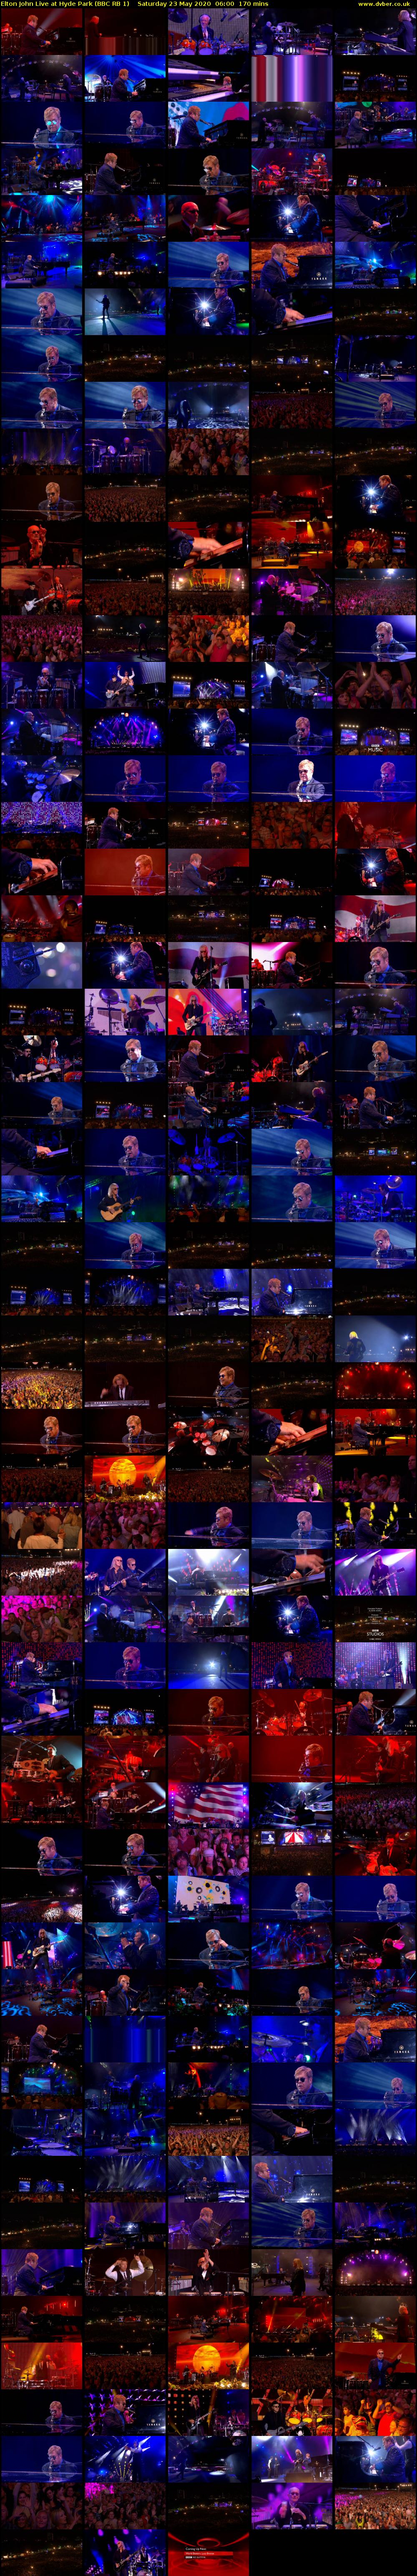 Elton John Live at Hyde Park (BBC RB 1) Saturday 23 May 2020 06:00 - 08:50